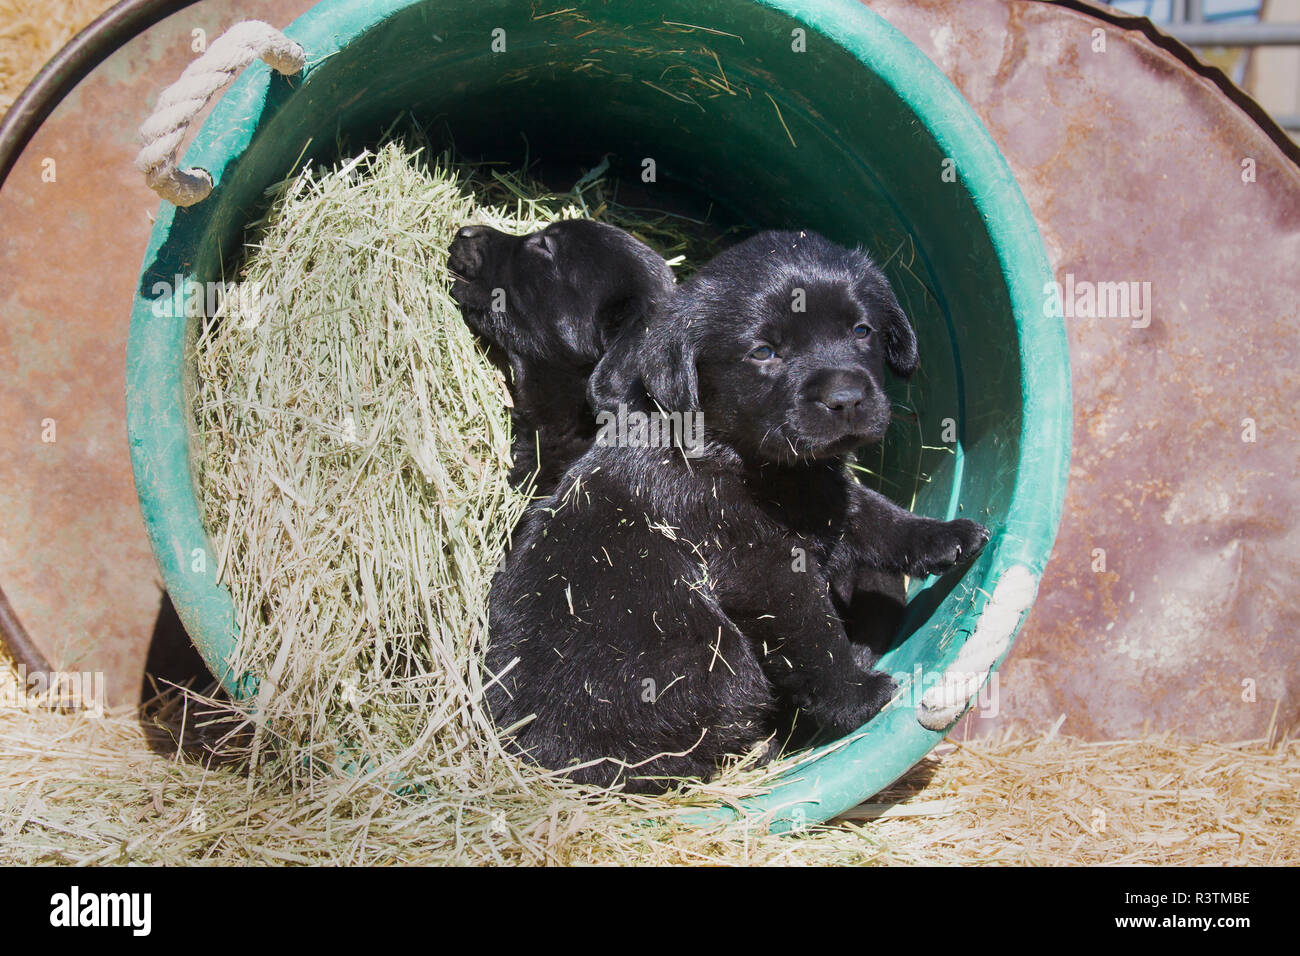 Deux chiots Labrador noir assis dans le foin dans un seau (PR) Banque D'Images